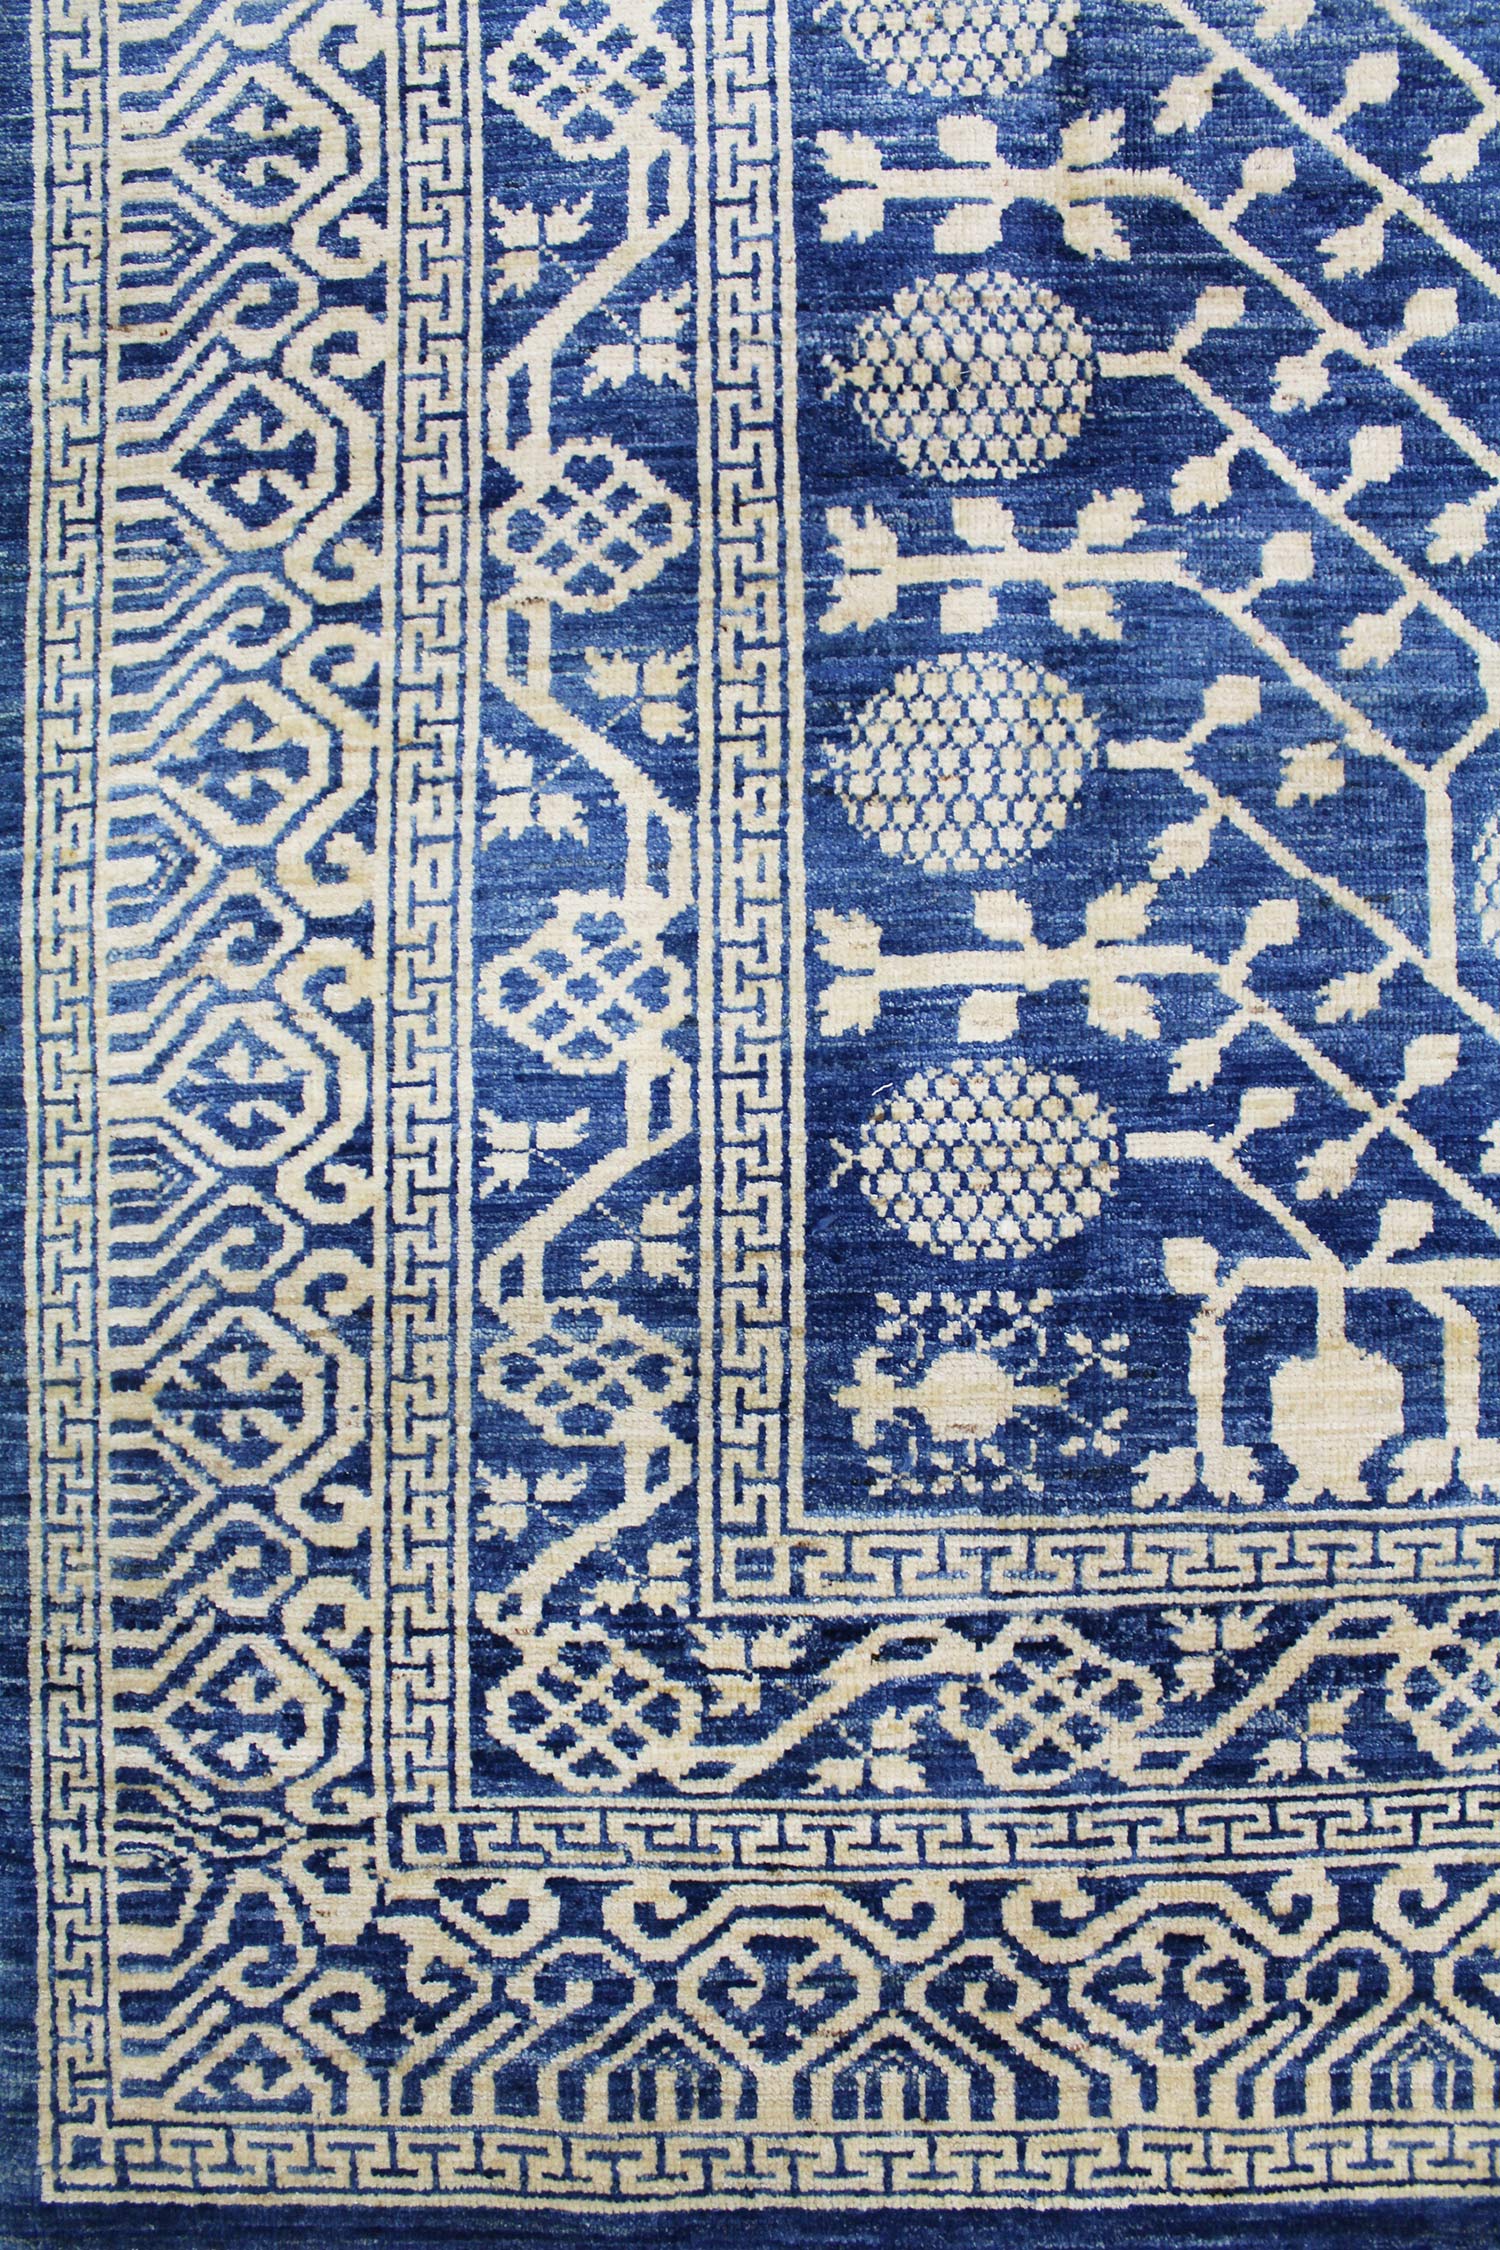 Khotan Handwoven Traditional Rug, J60858